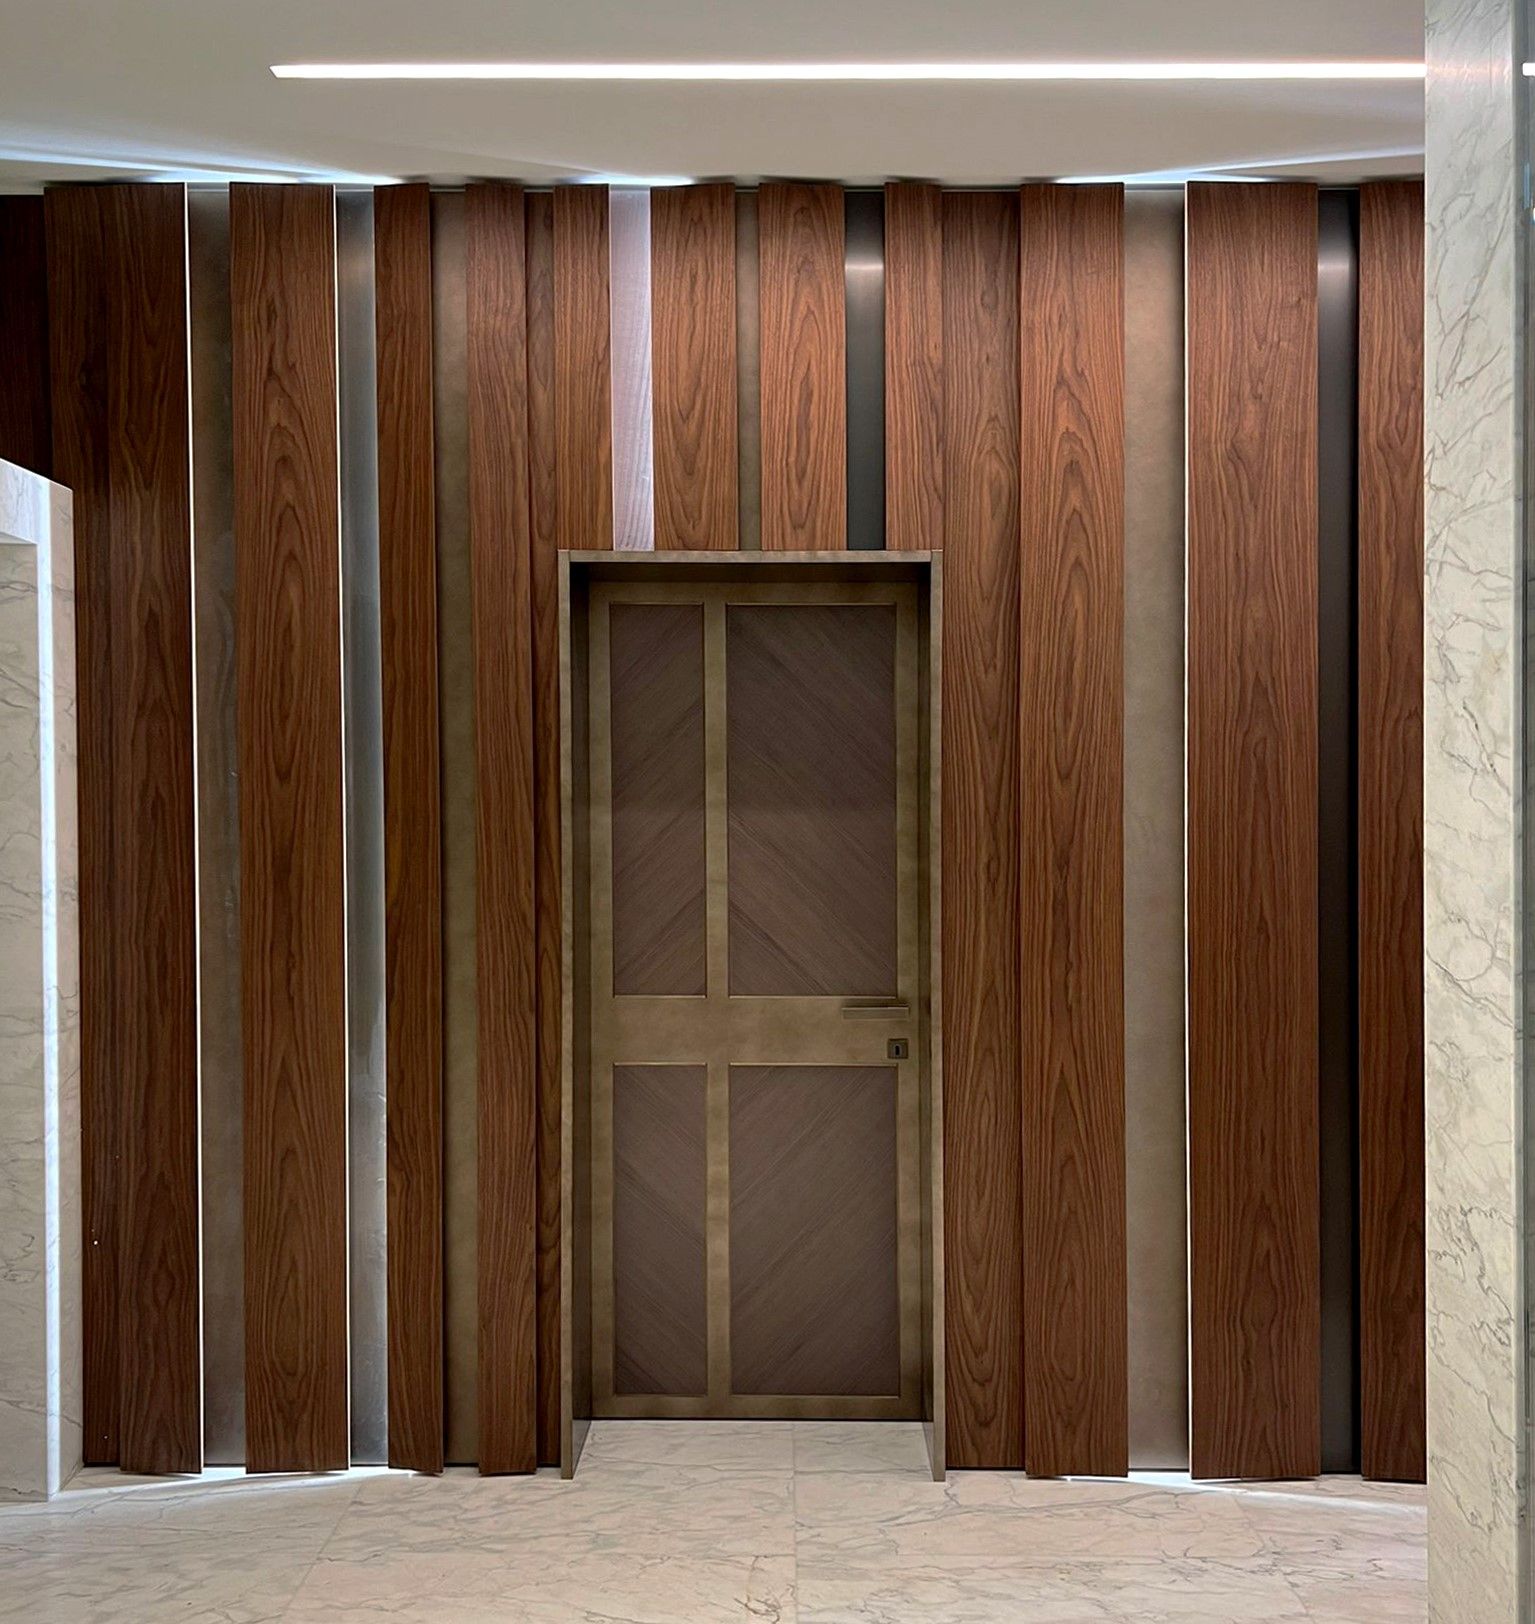 La porte en bois, au décor moderne, a été conçue pour un projet de Peverelli.